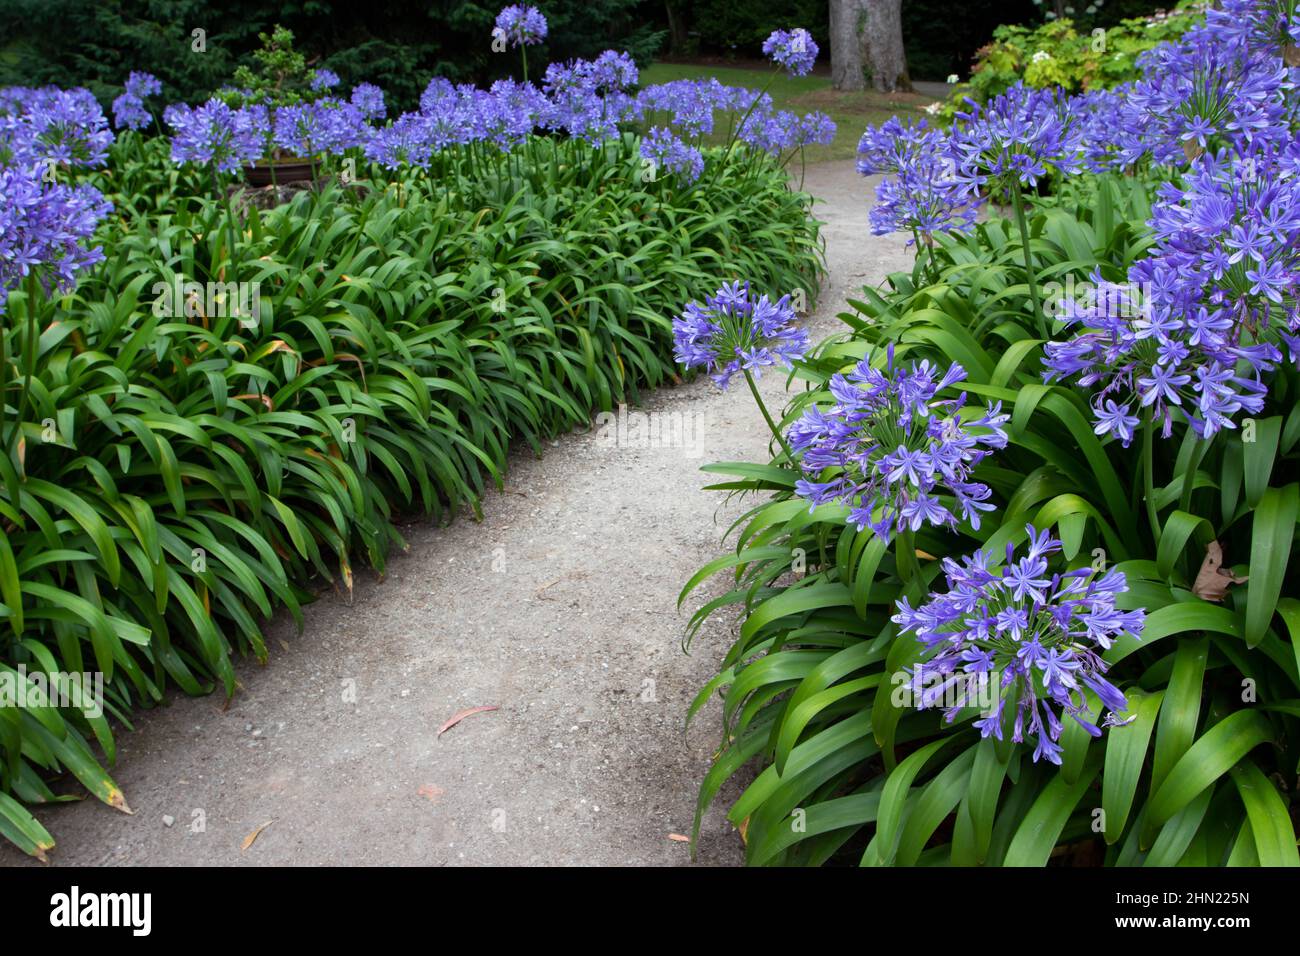 Chemin dans le jardin avec des fleurs bleues d'agapanthus. Nénuphars du Nil ou plante à fleurs de nénuphars africains. Banque D'Images